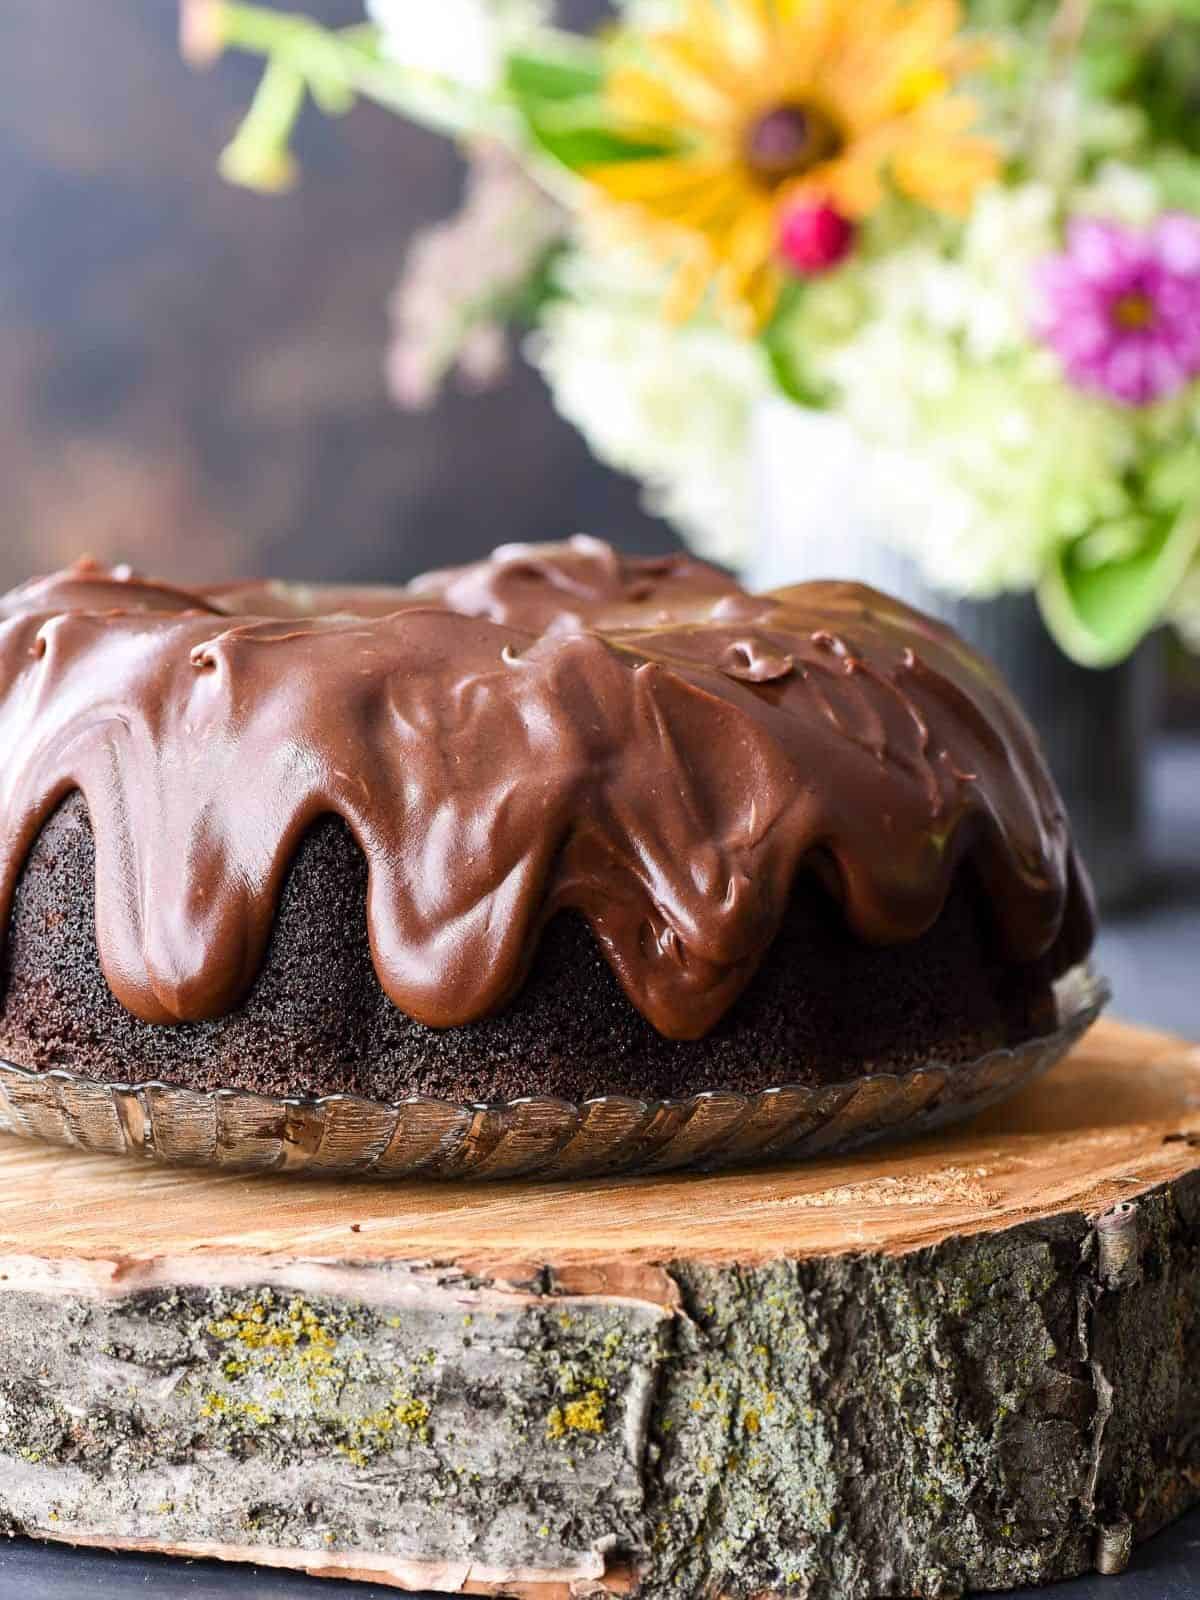 a decadent chocolate bundt dessert with buttermilk.